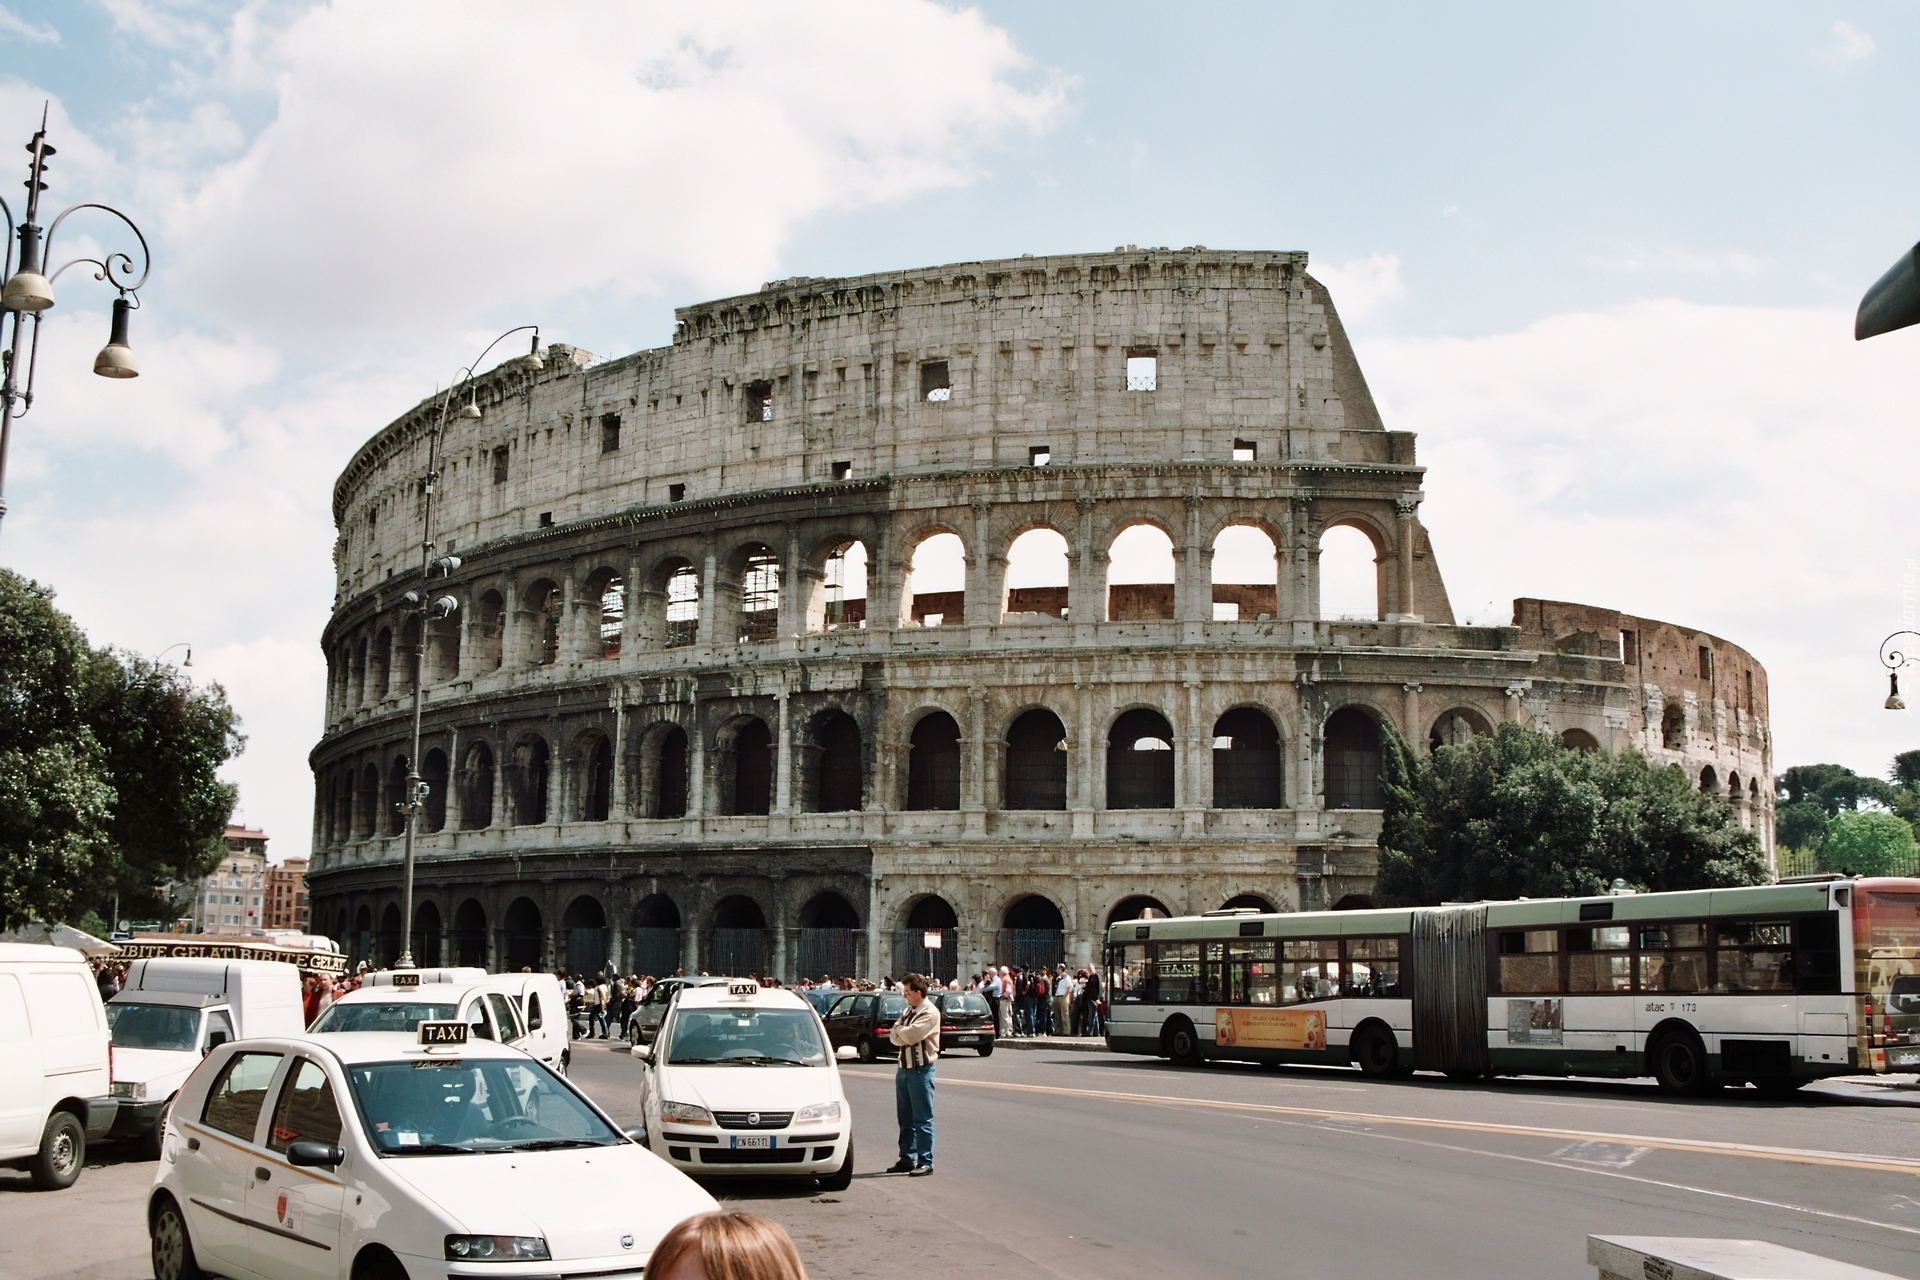 Rzym, Koloseum, Ulica, Samochody